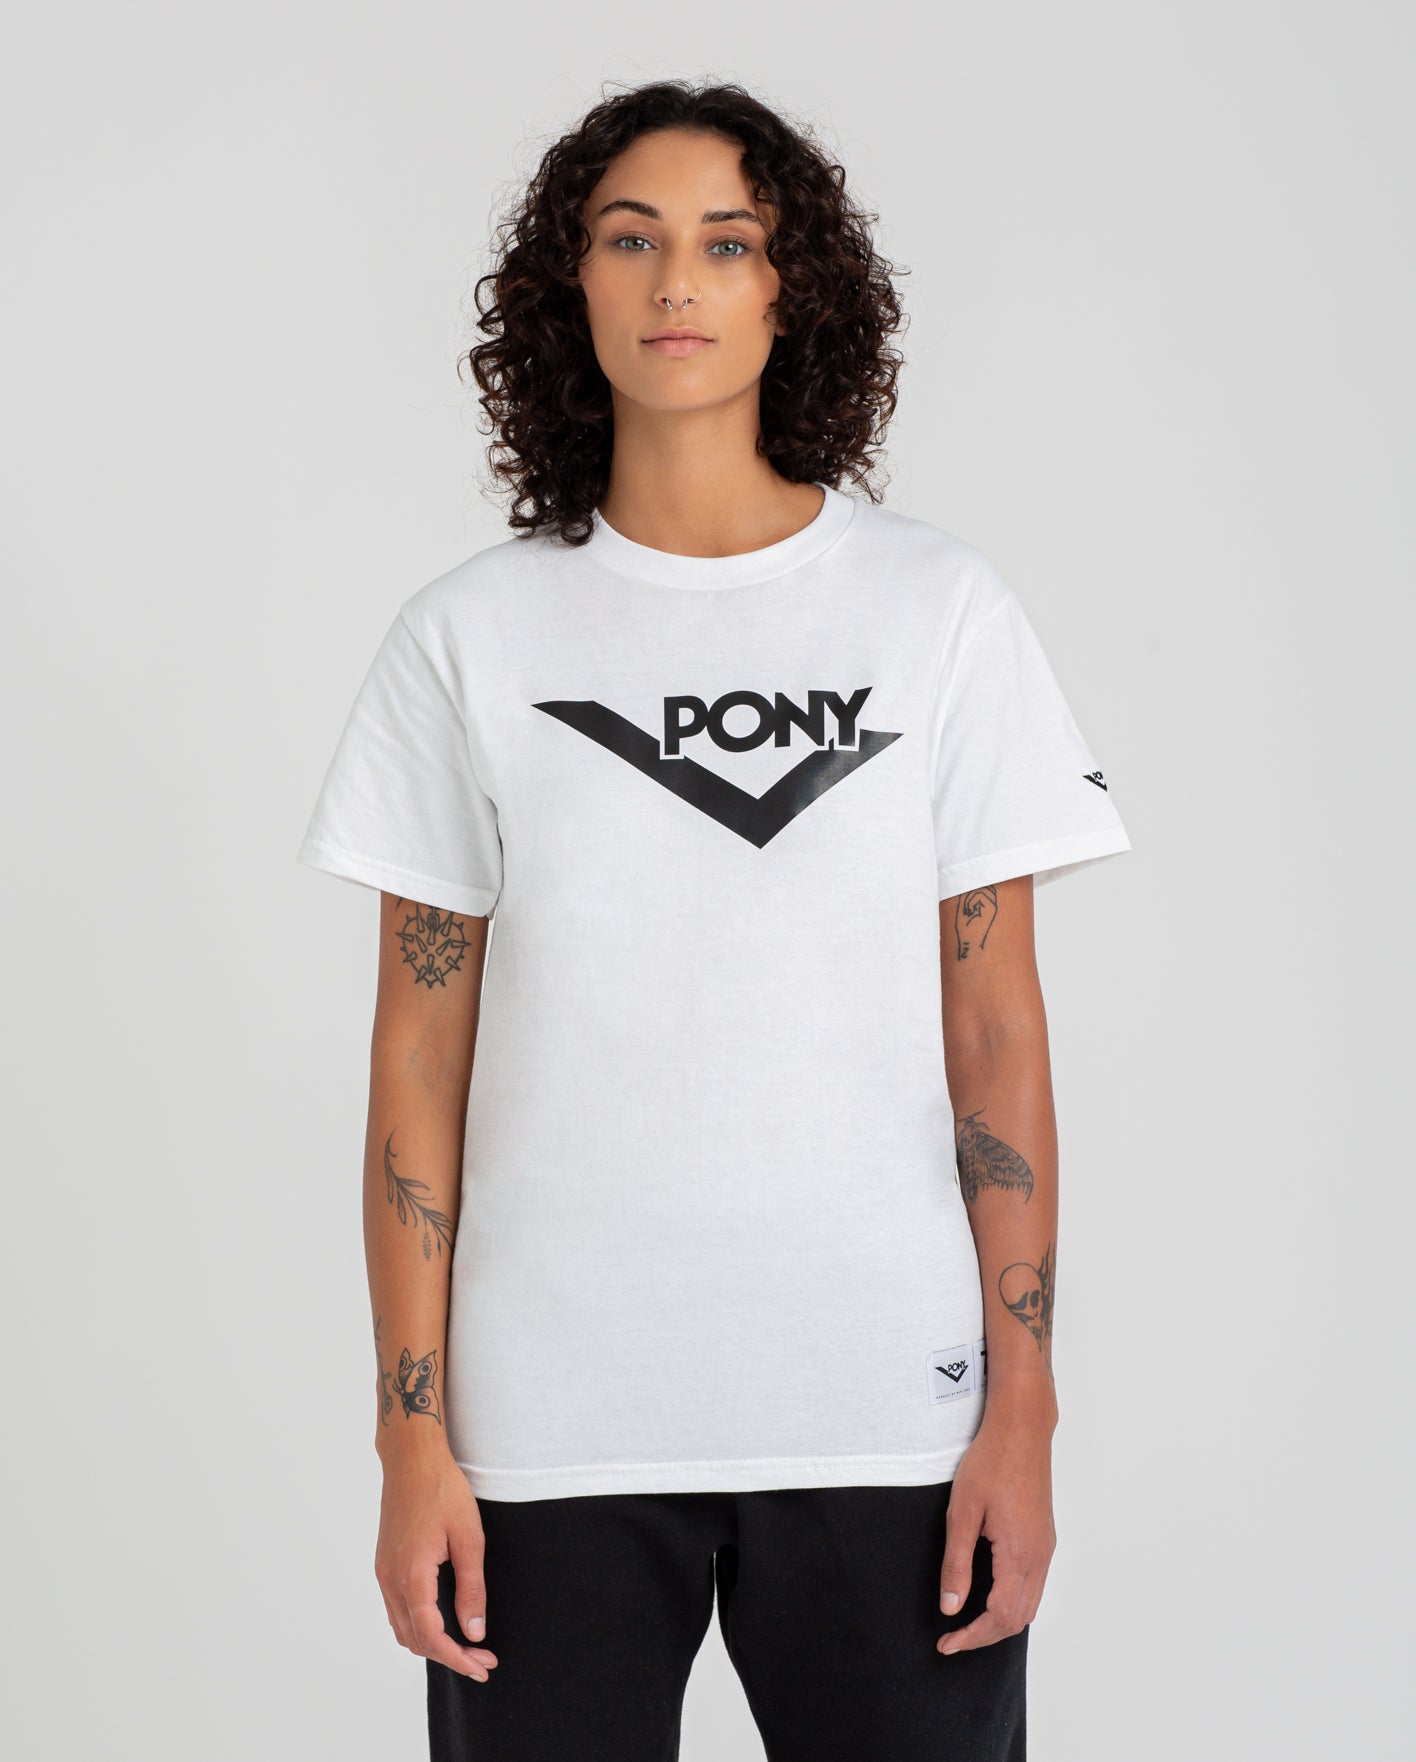 pony apparel